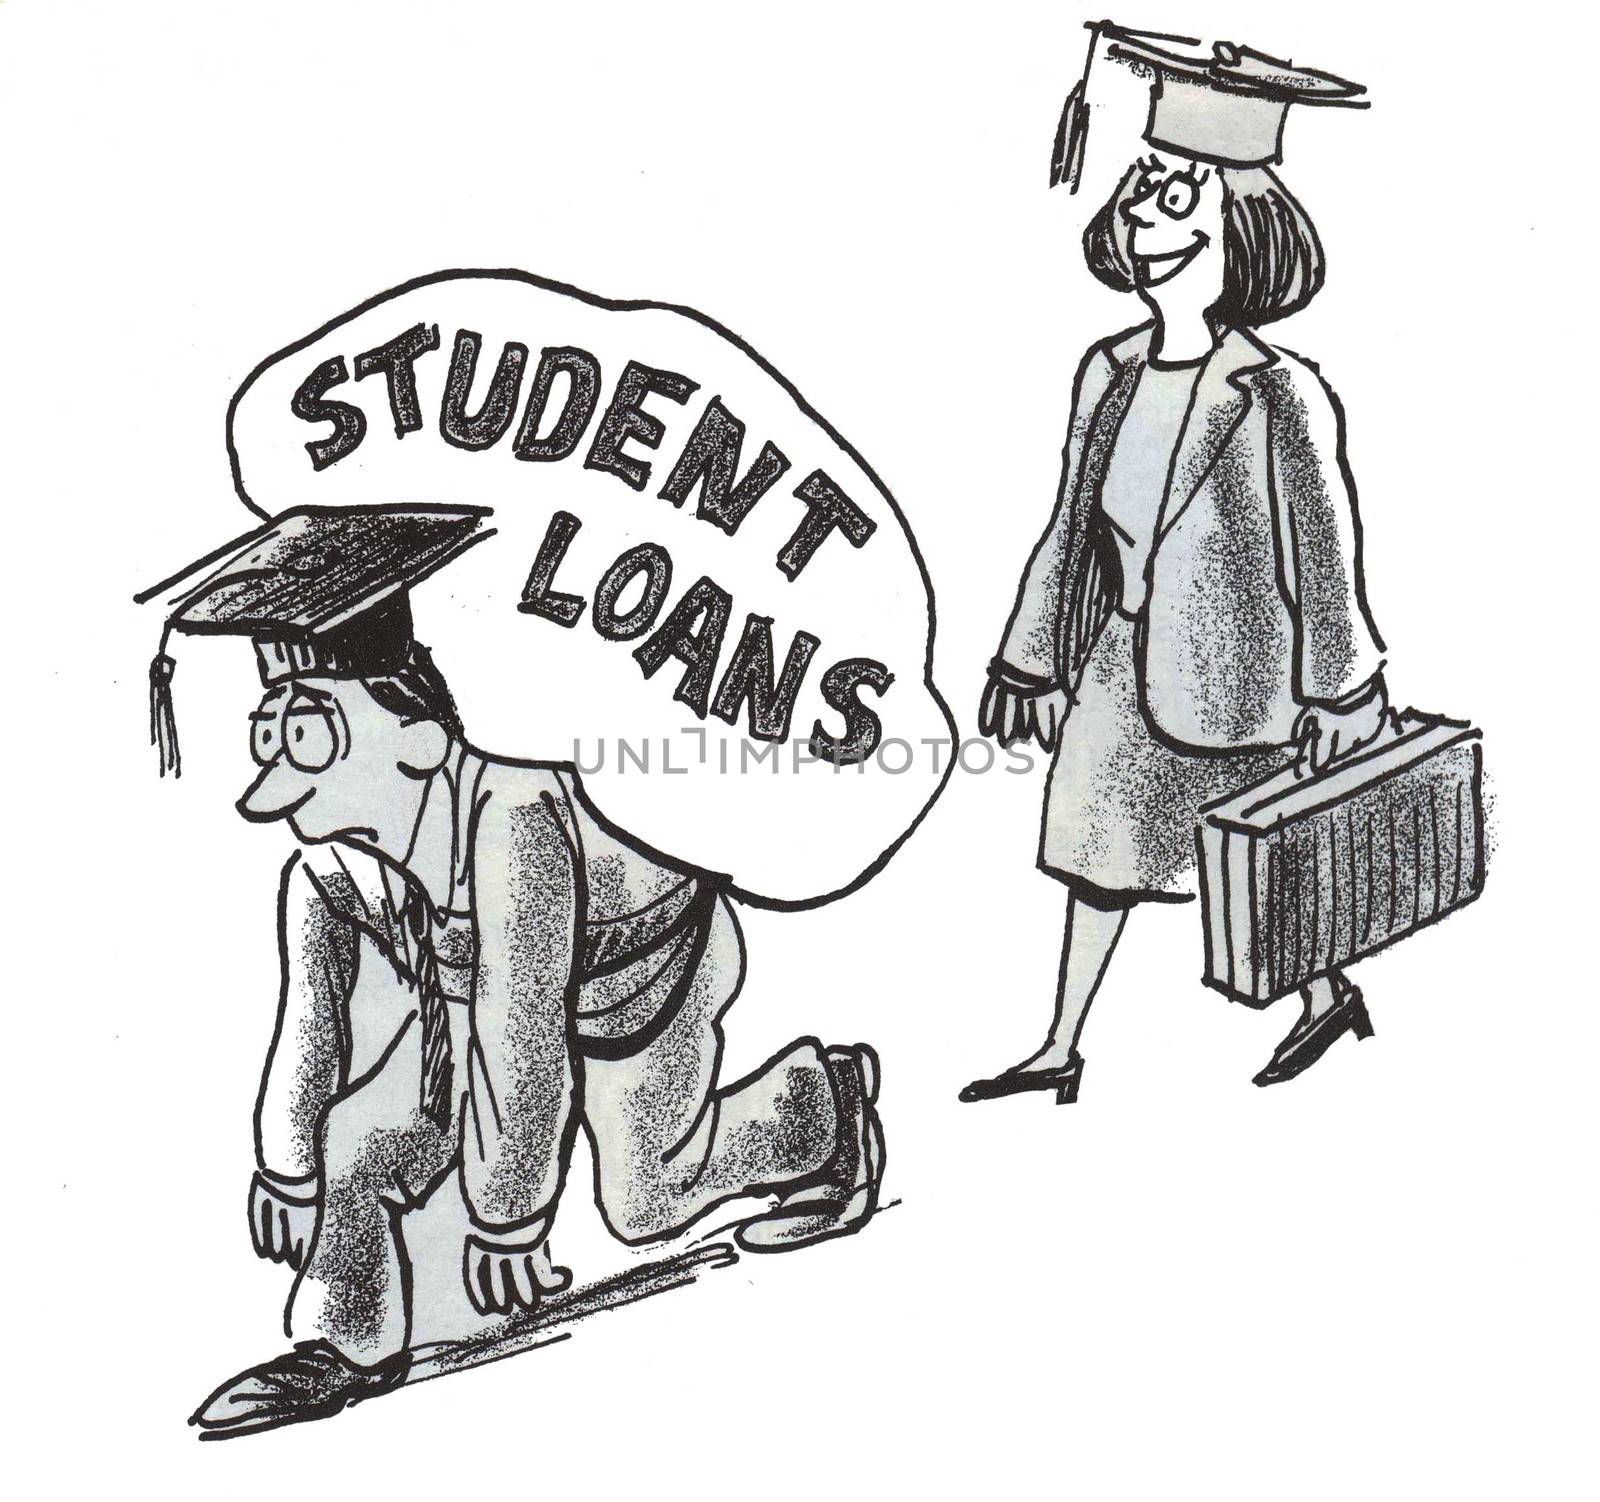 The heavy burden of college student debt.